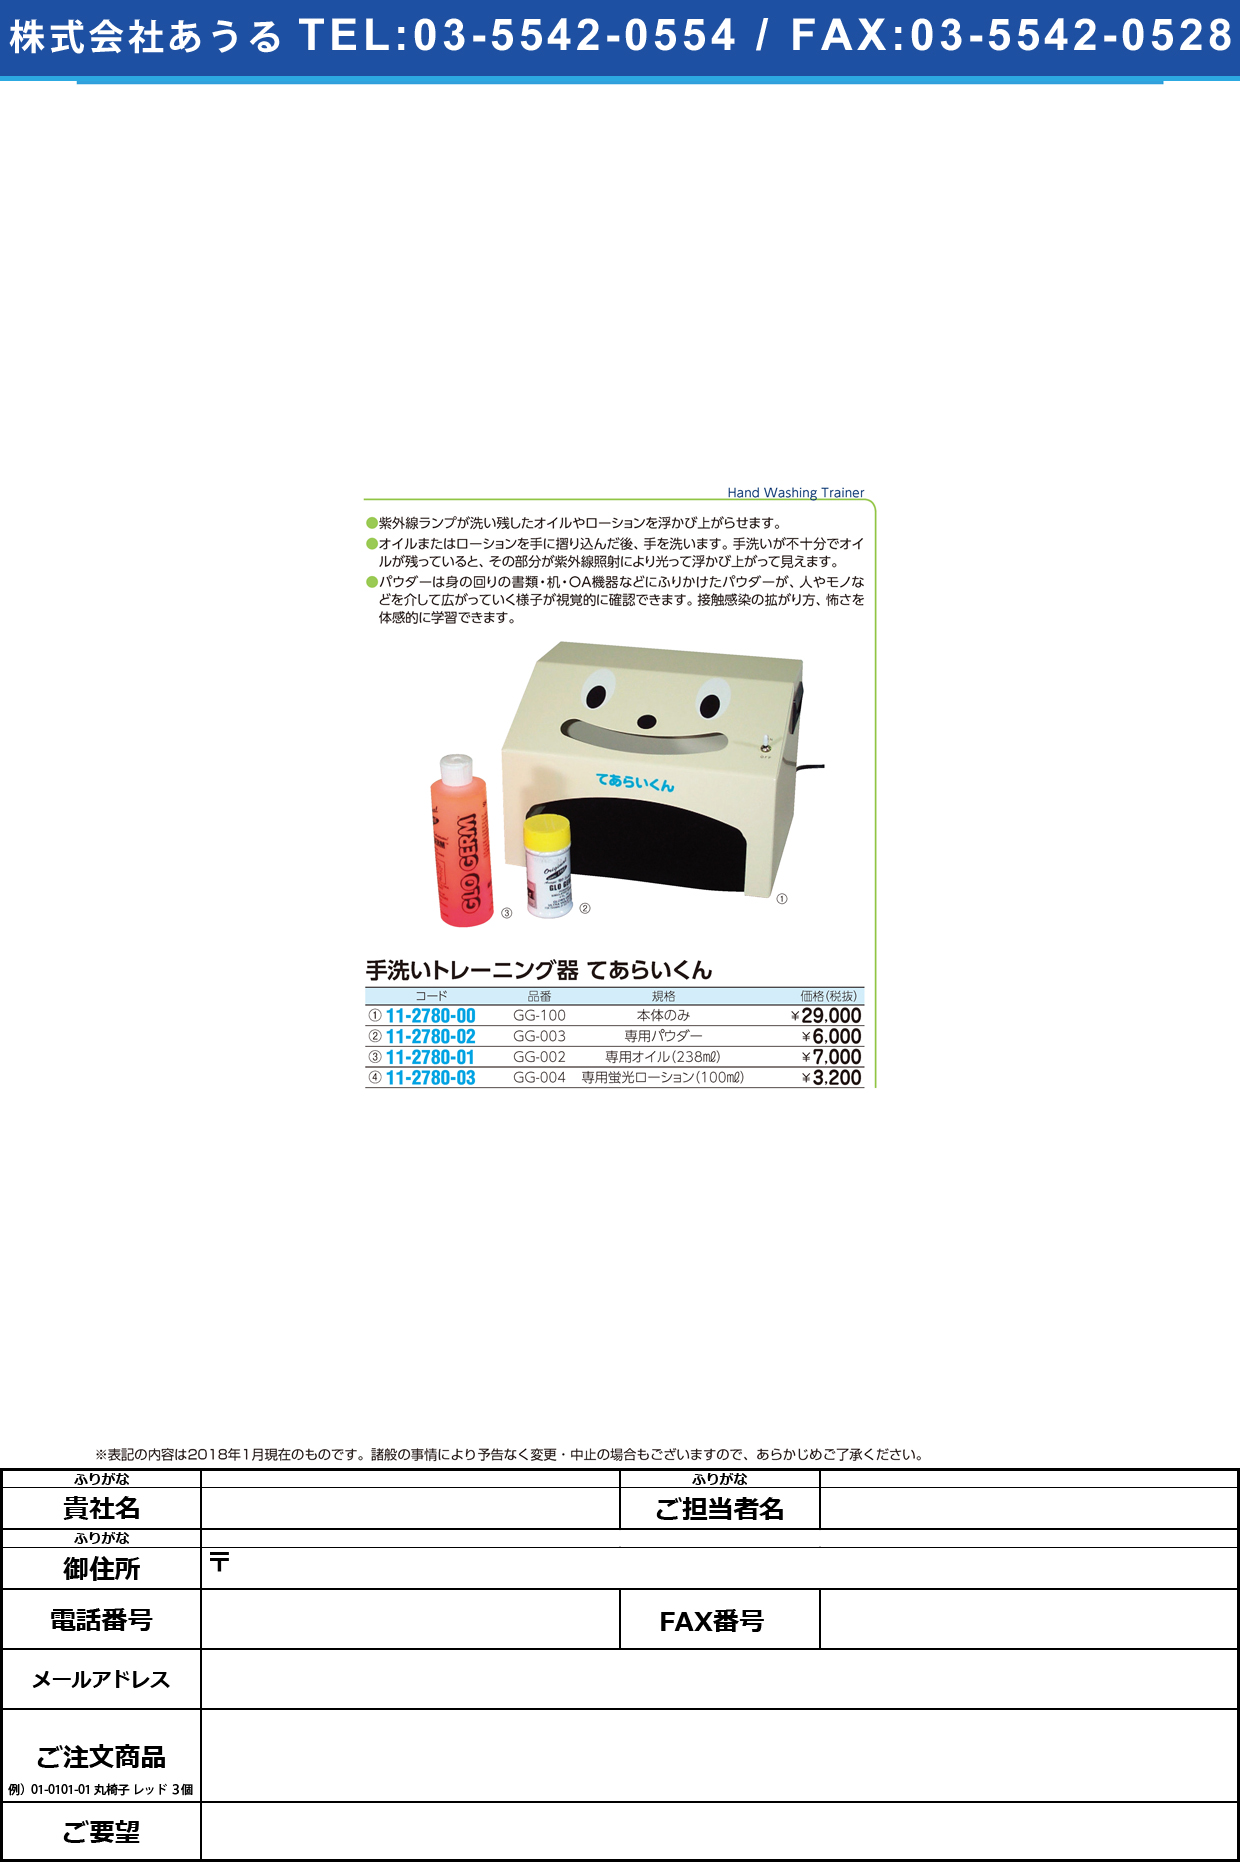 (11-2780-02)手洗いトレーニング器用パウダー GG-003 ﾃｱﾗｲﾄﾚｰﾆﾝｸﾞﾖｳﾊﾟｳﾀﾞｰ【1本単位】【2019年カタログ商品】